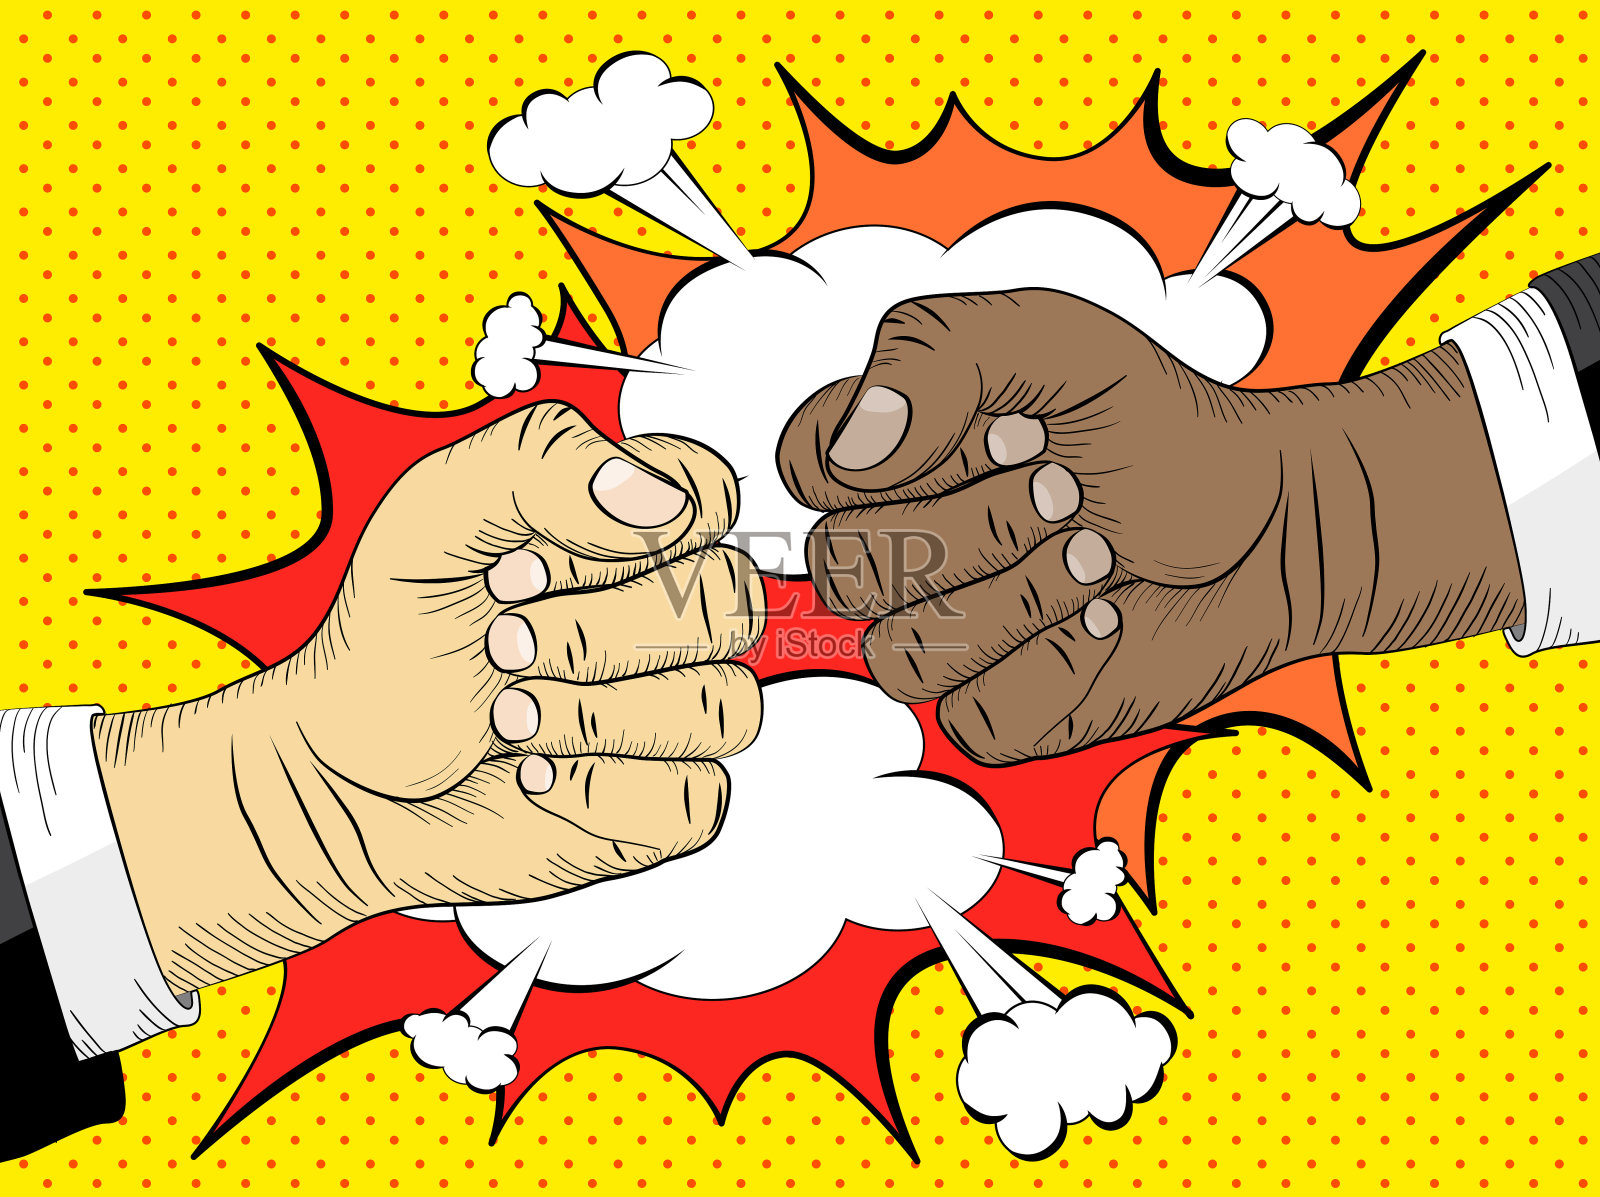 黑人的生活很重要，为平等权利的观念而斗争。两只手在一起碰撞，做出打斗的姿势插画图片素材